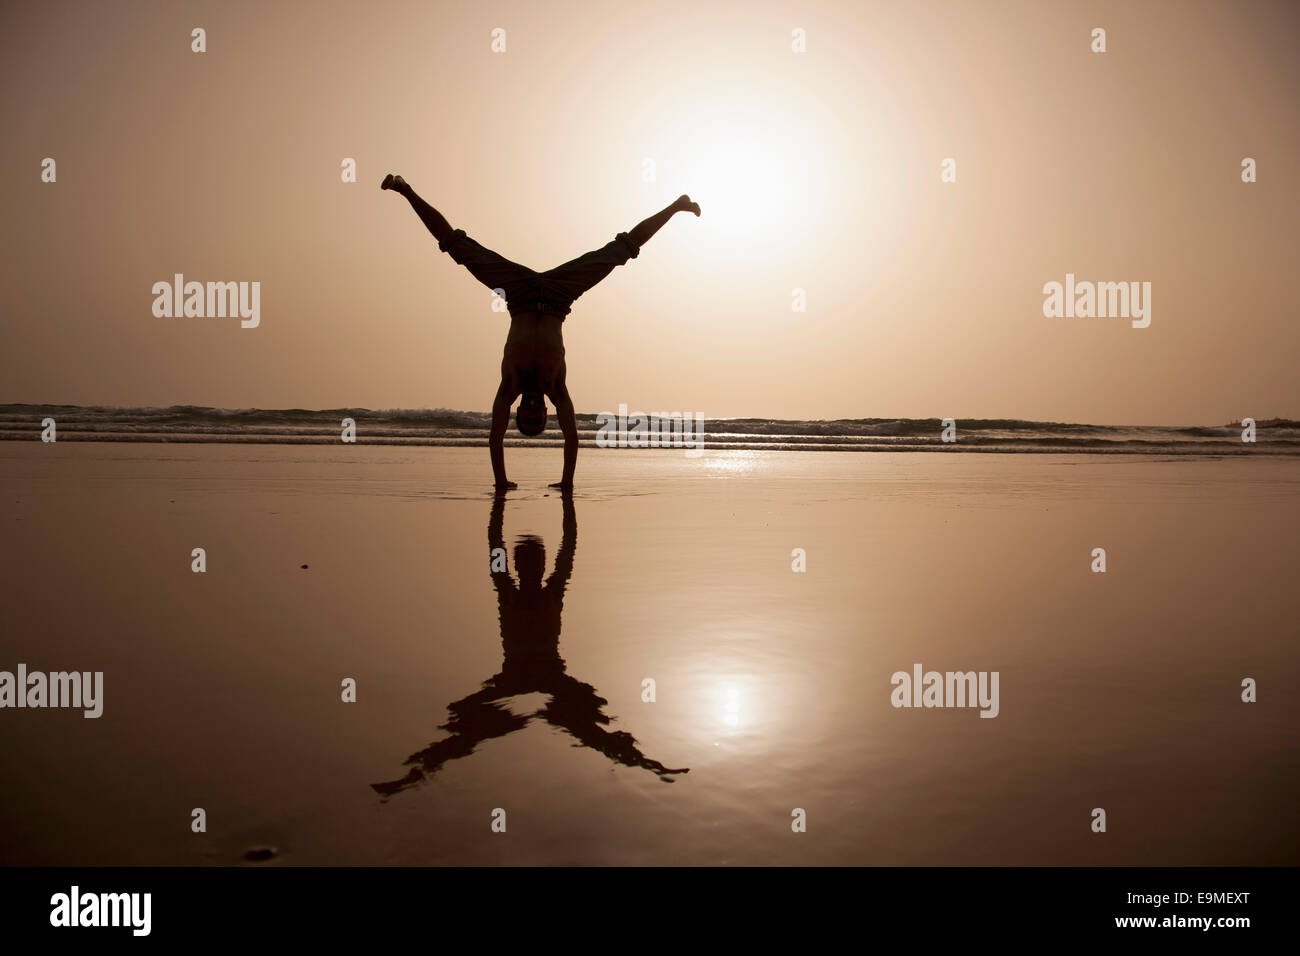 Toute la longueur de l'ossature man performing handstand at beach Banque D'Images